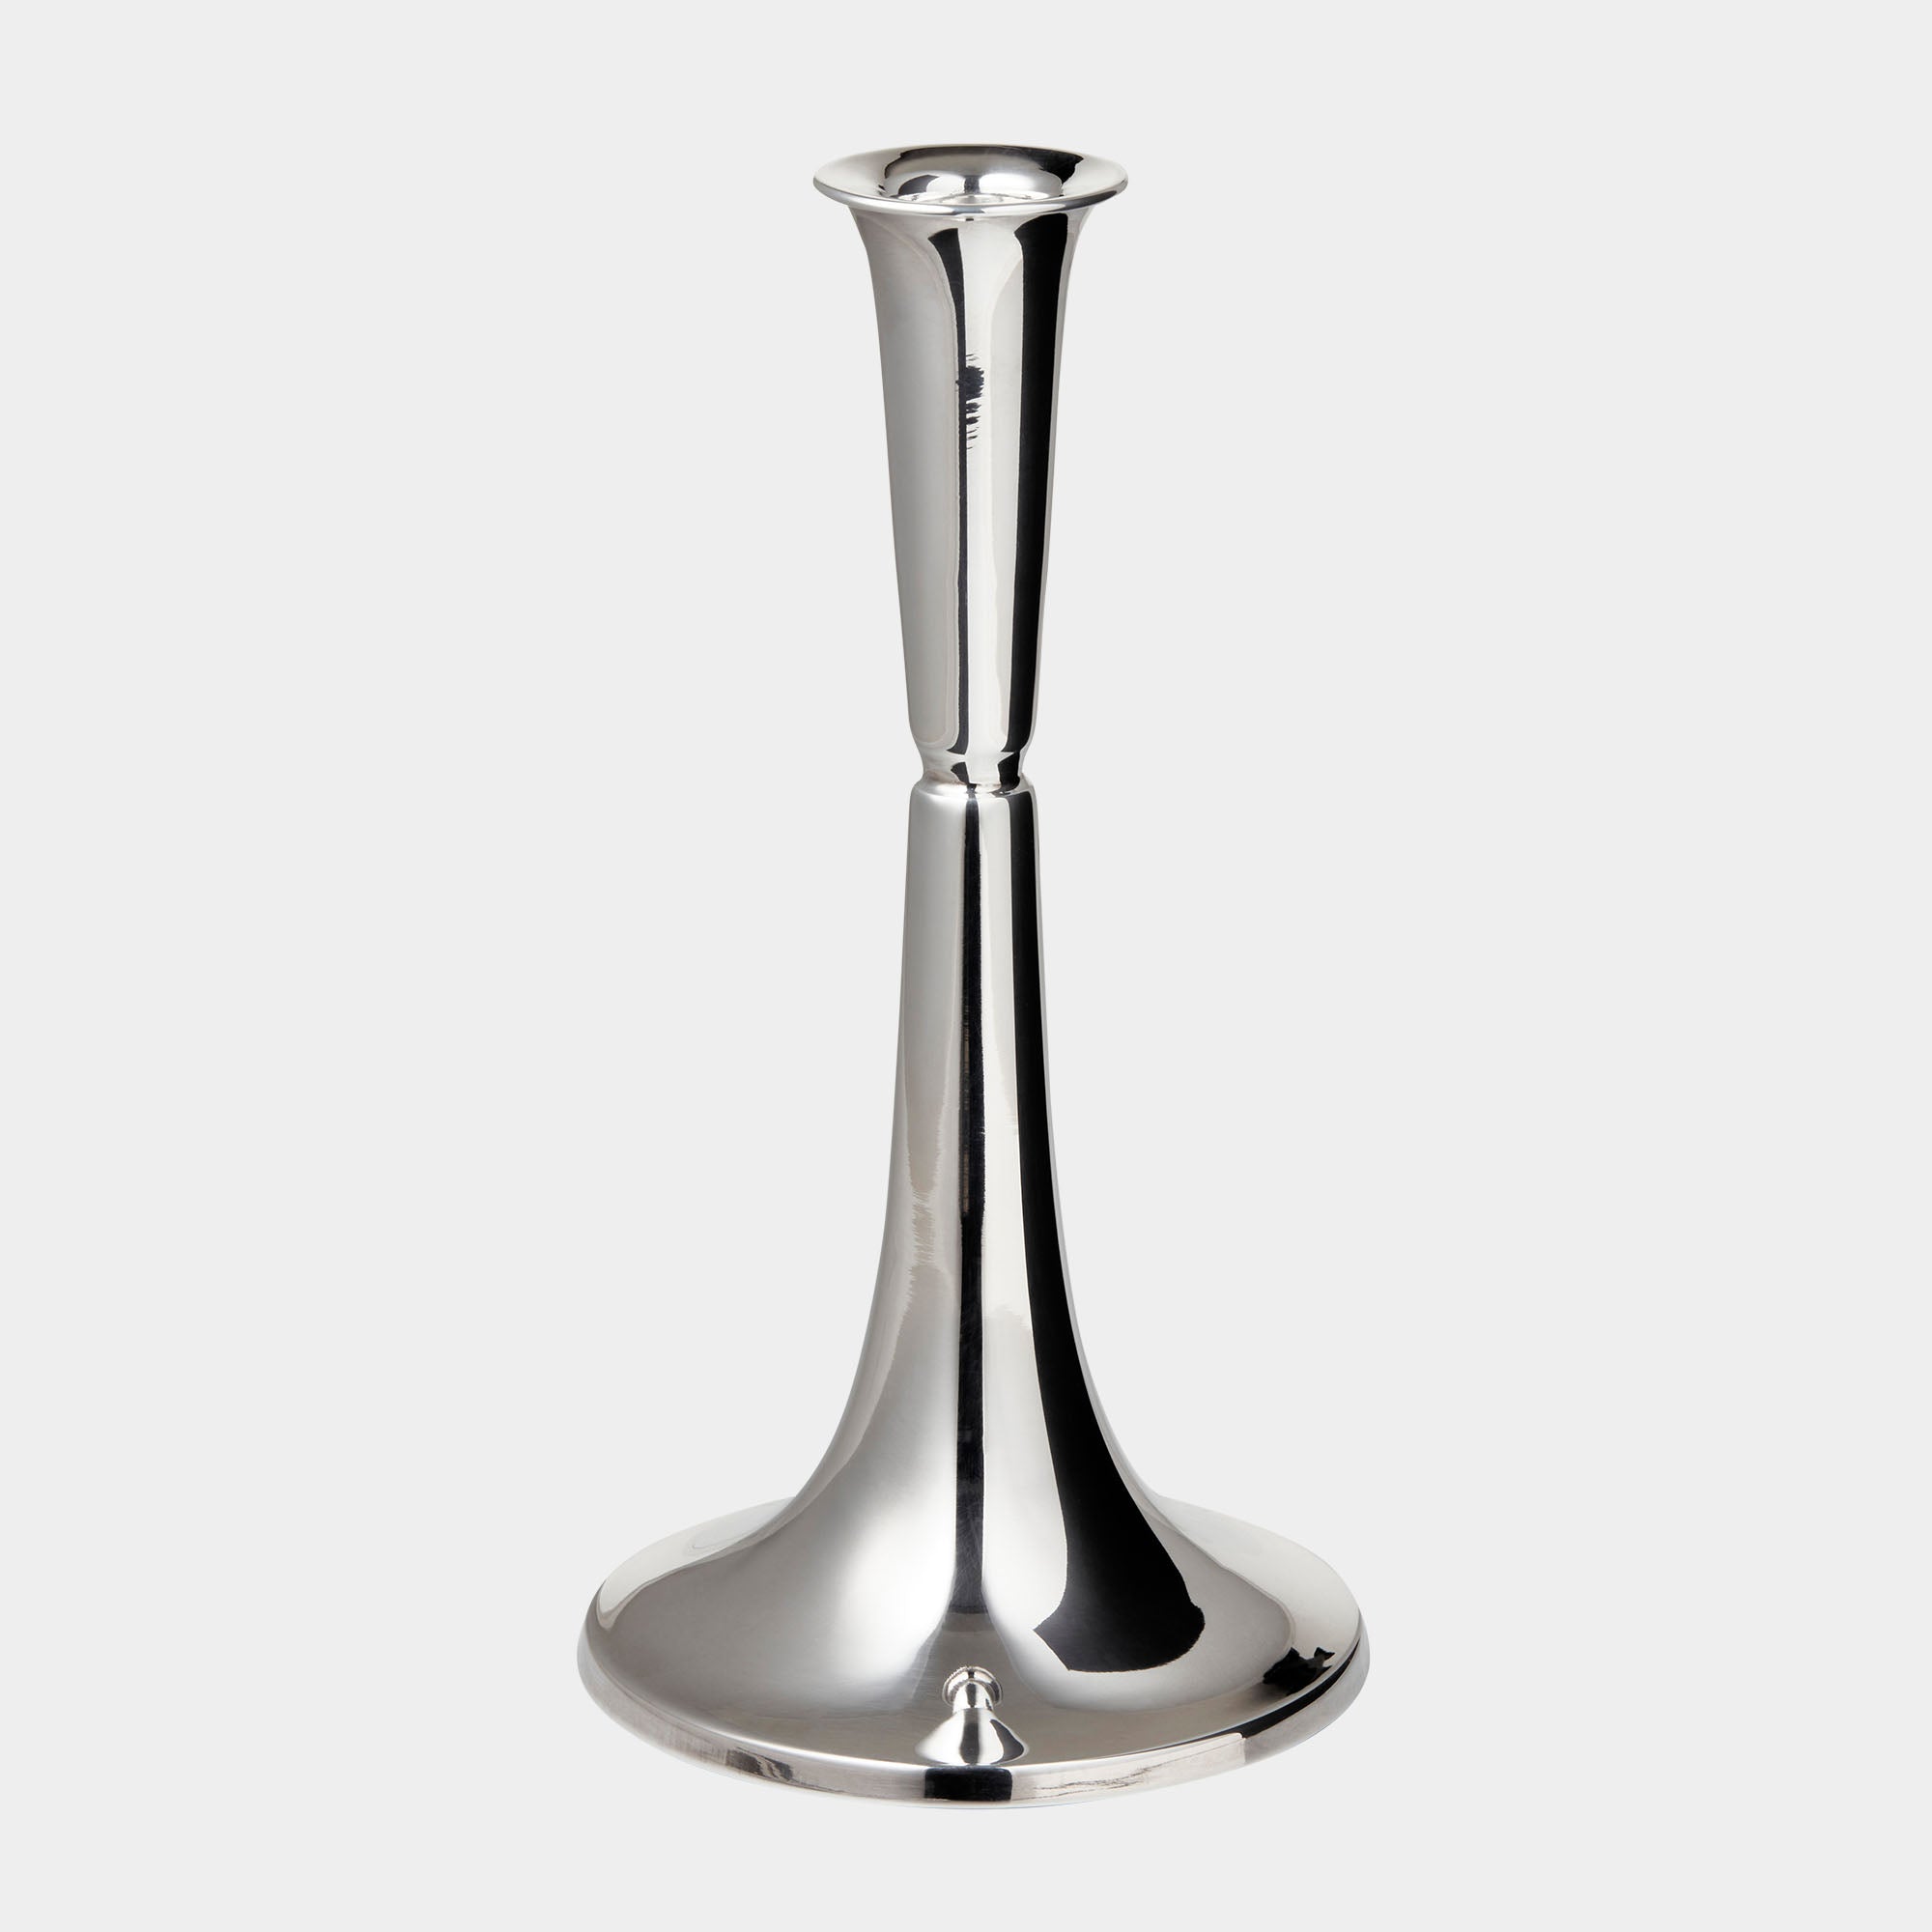 Luxus Silberleuchter: 20 cm Höhe & 162g mit Silberplatte-Fuß - Bild 1